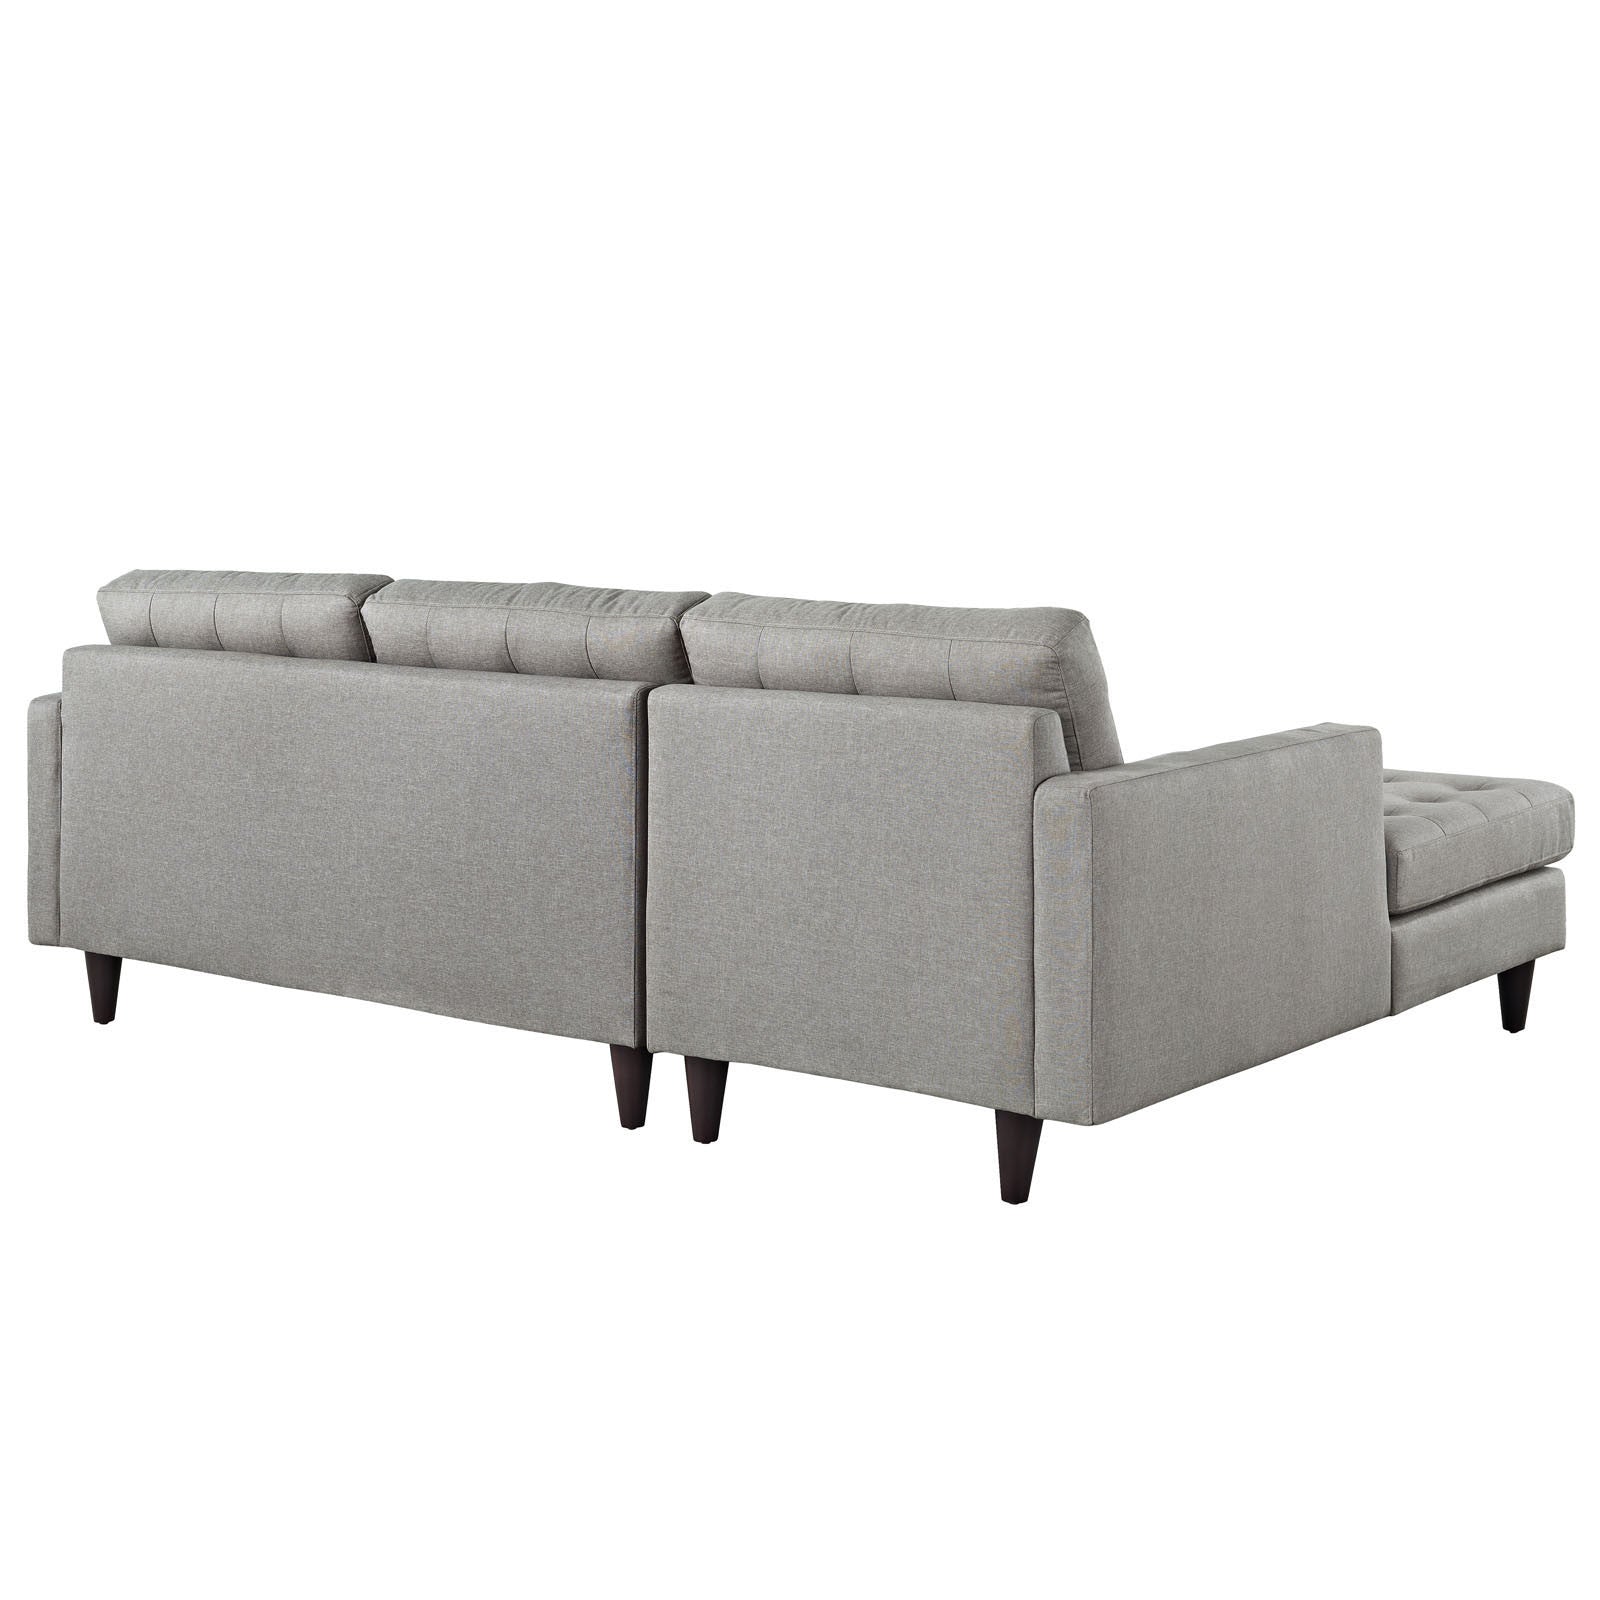 Era Upholstered Sectional Sofa Light Gray